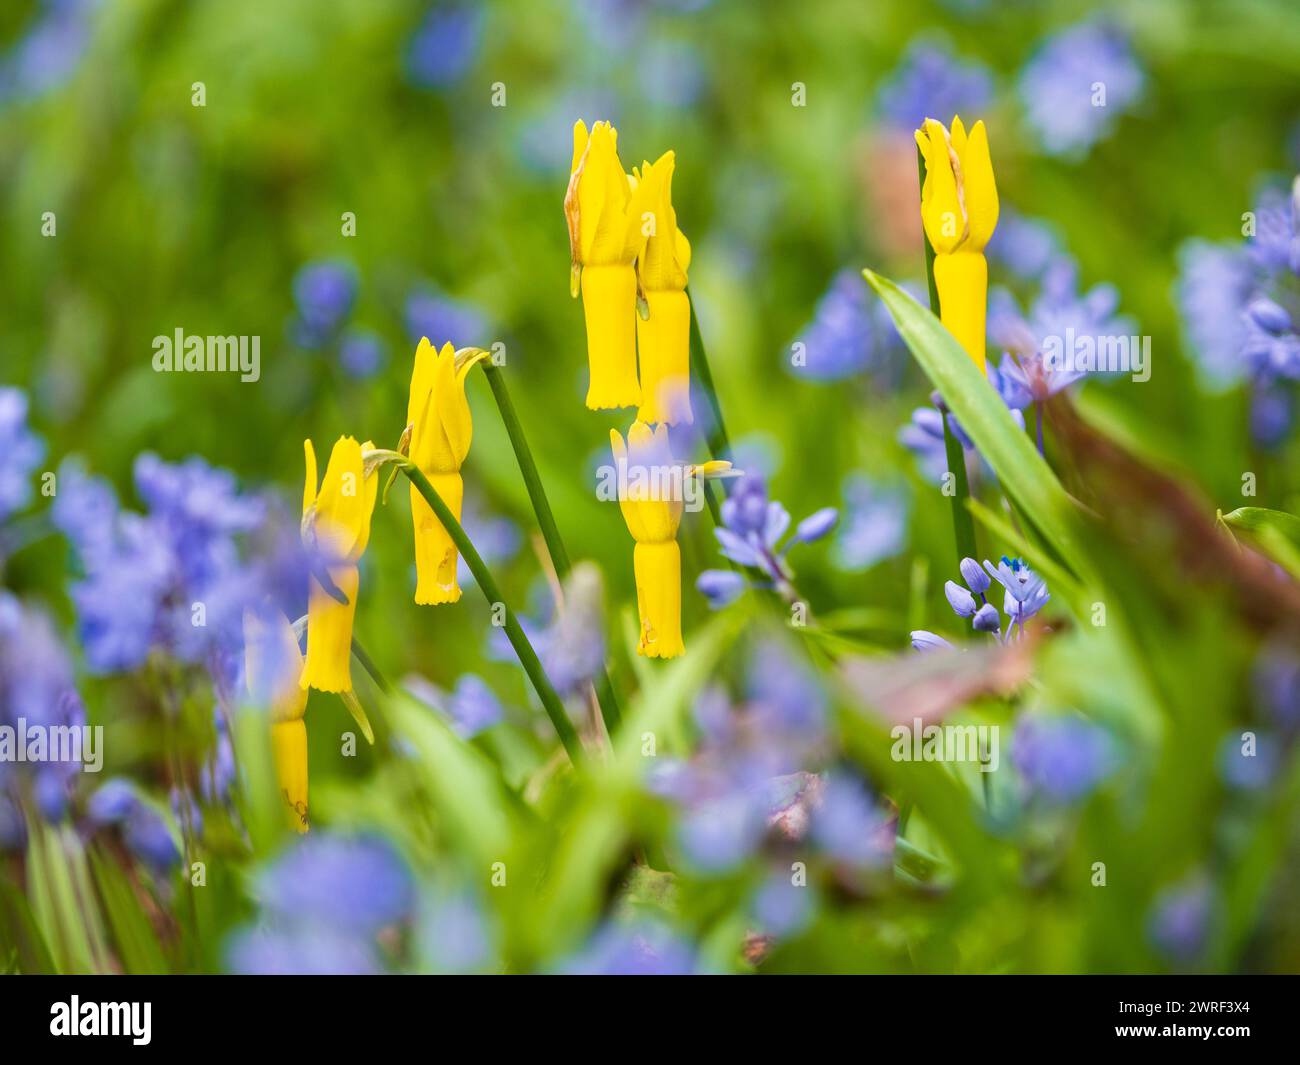 Stark reflektierte gelbe Blüten der frühen Apfel blühenden Narcissus cyclamineus unter dem Blau von Scilla bithynica Stockfoto